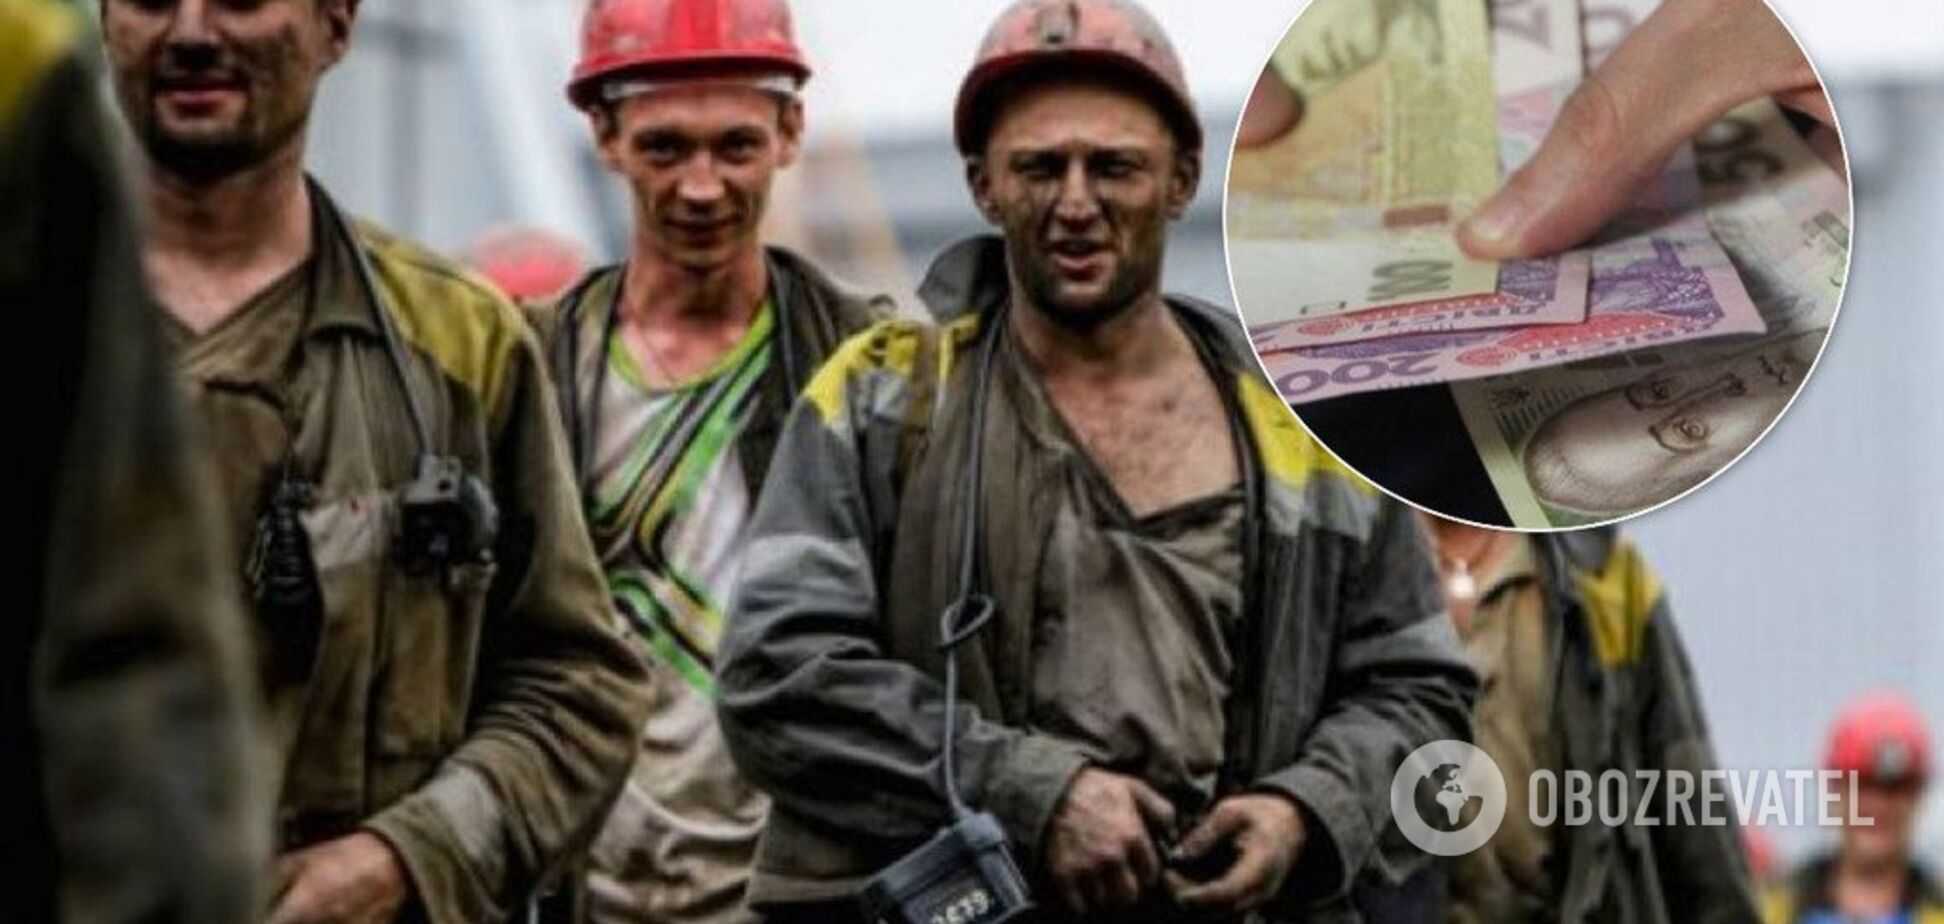 Из-за теплой зимы: Оржель объяснил, почему шахтерам не платят зарплату